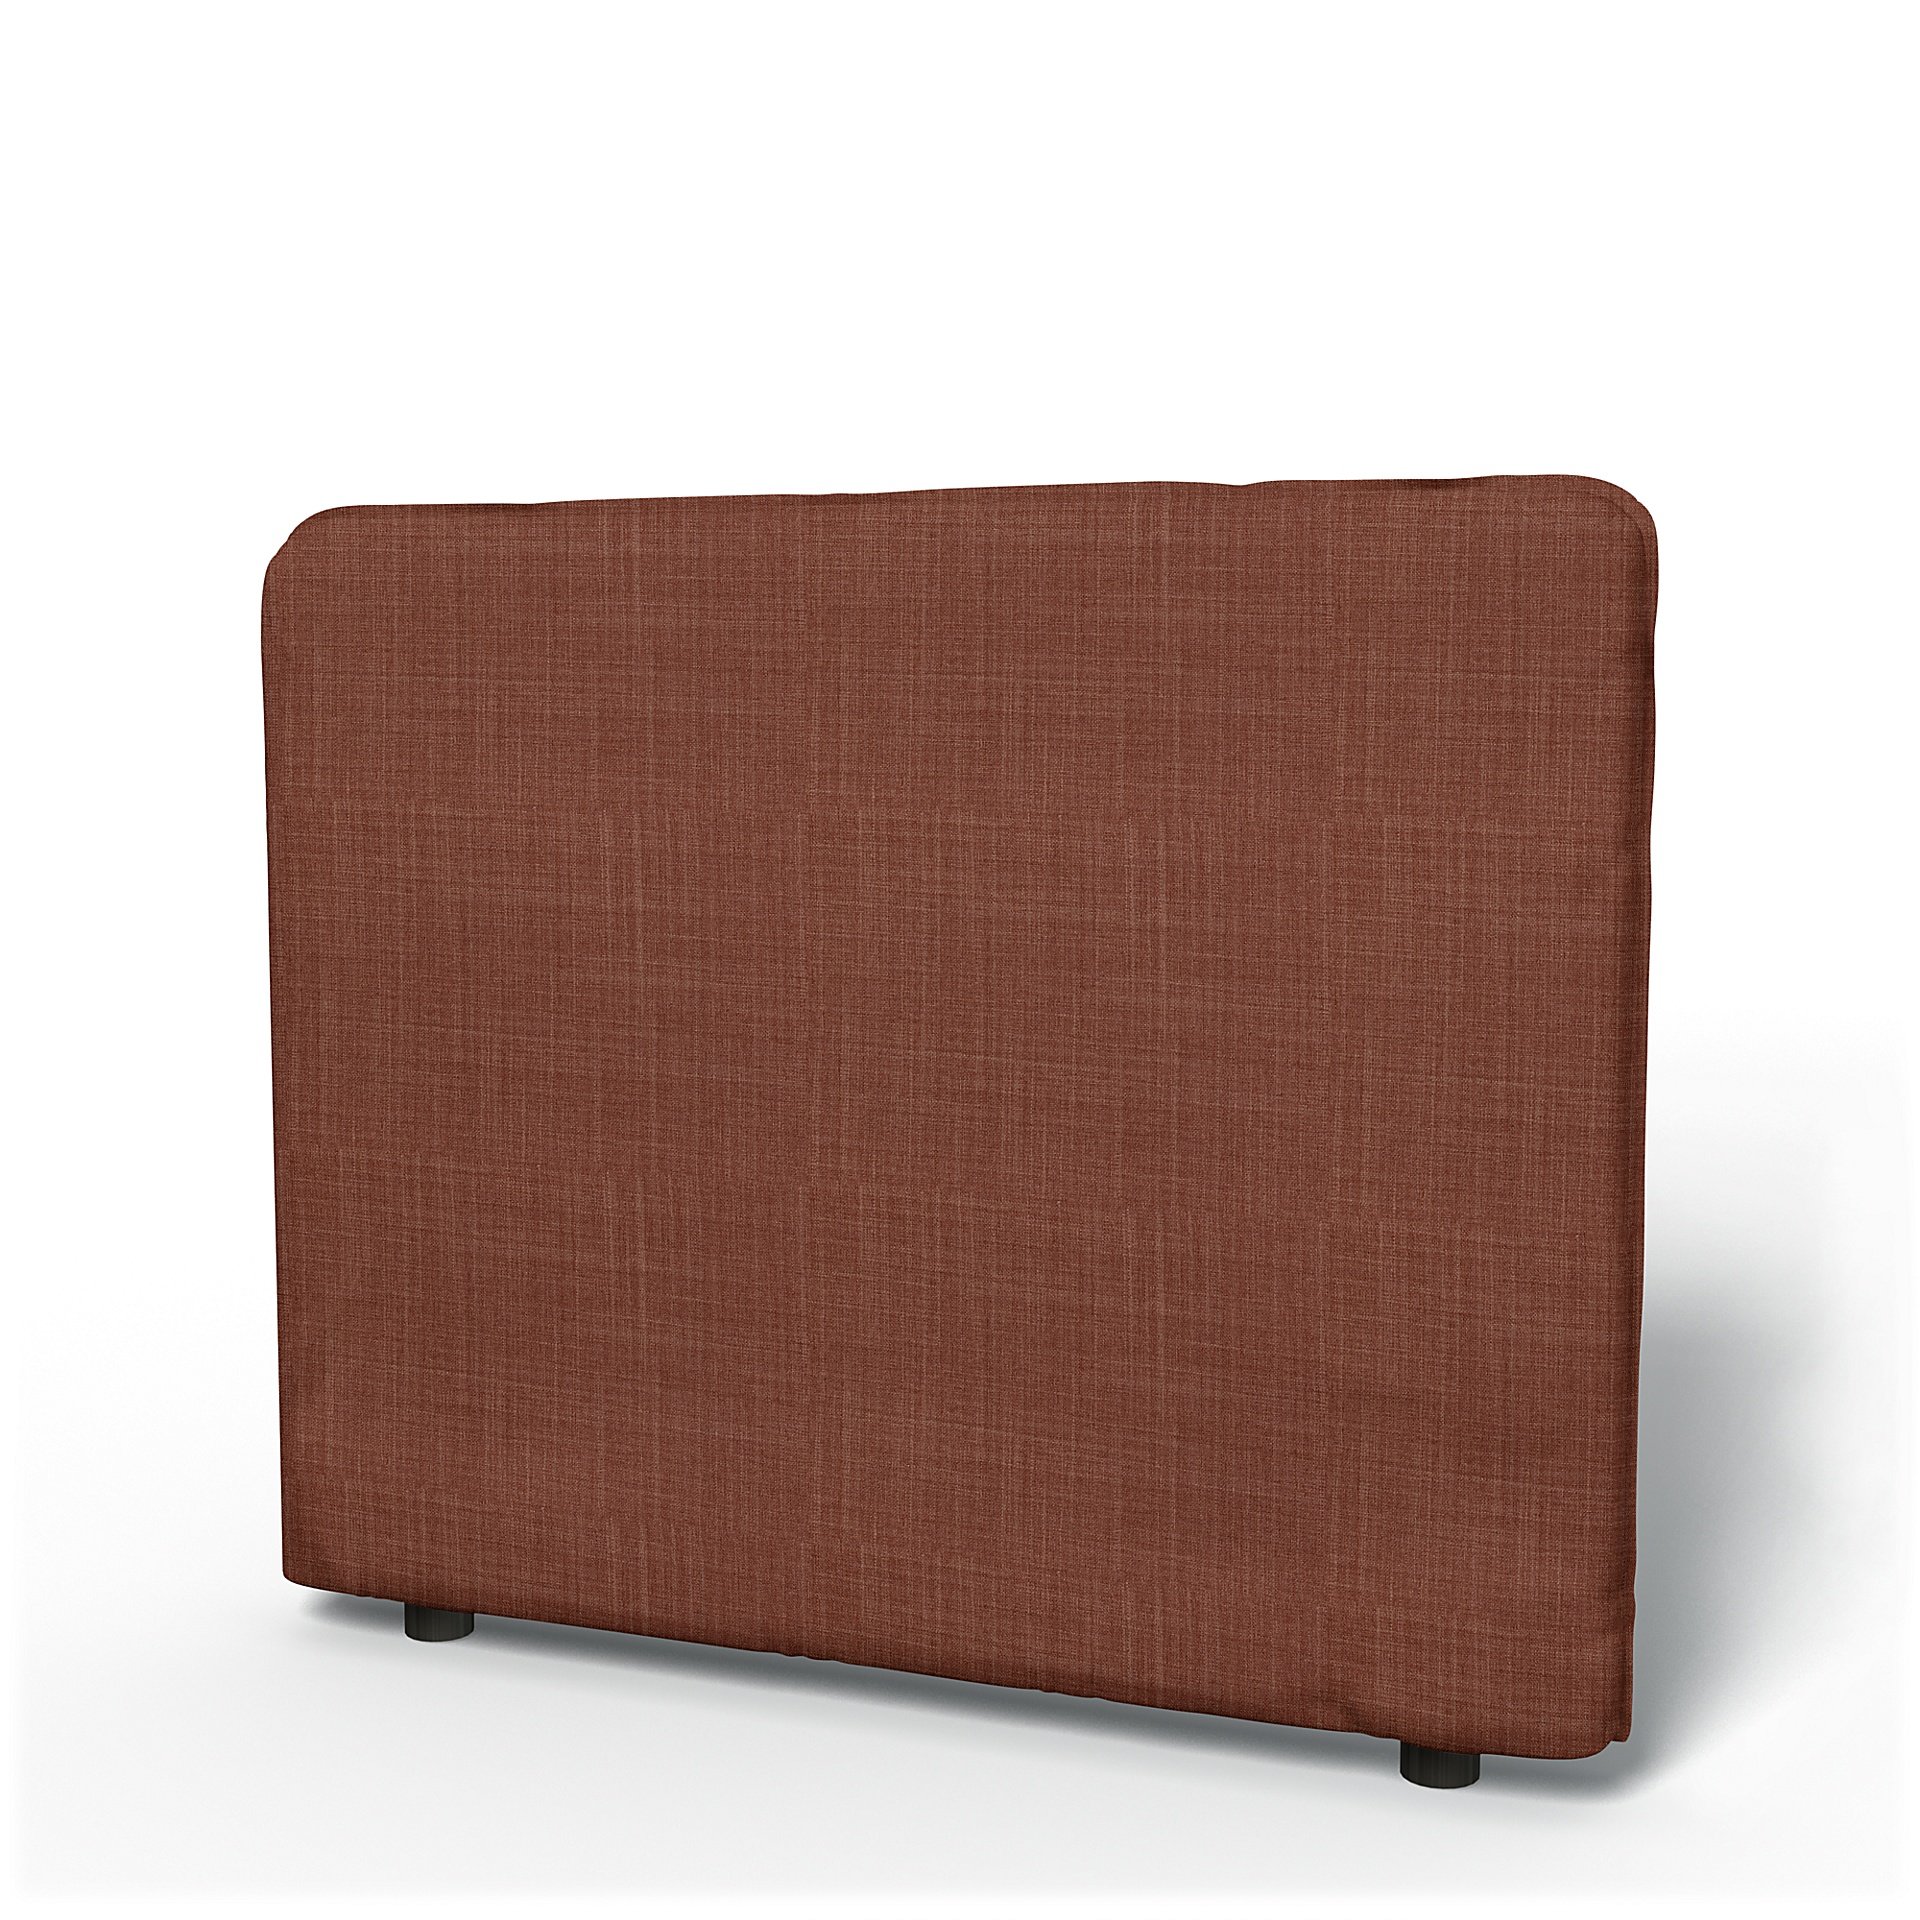 IKEA - Vallentuna Low Backrest Cover 100x80cm 39x32in, Rust, Boucle & Texture - Bemz